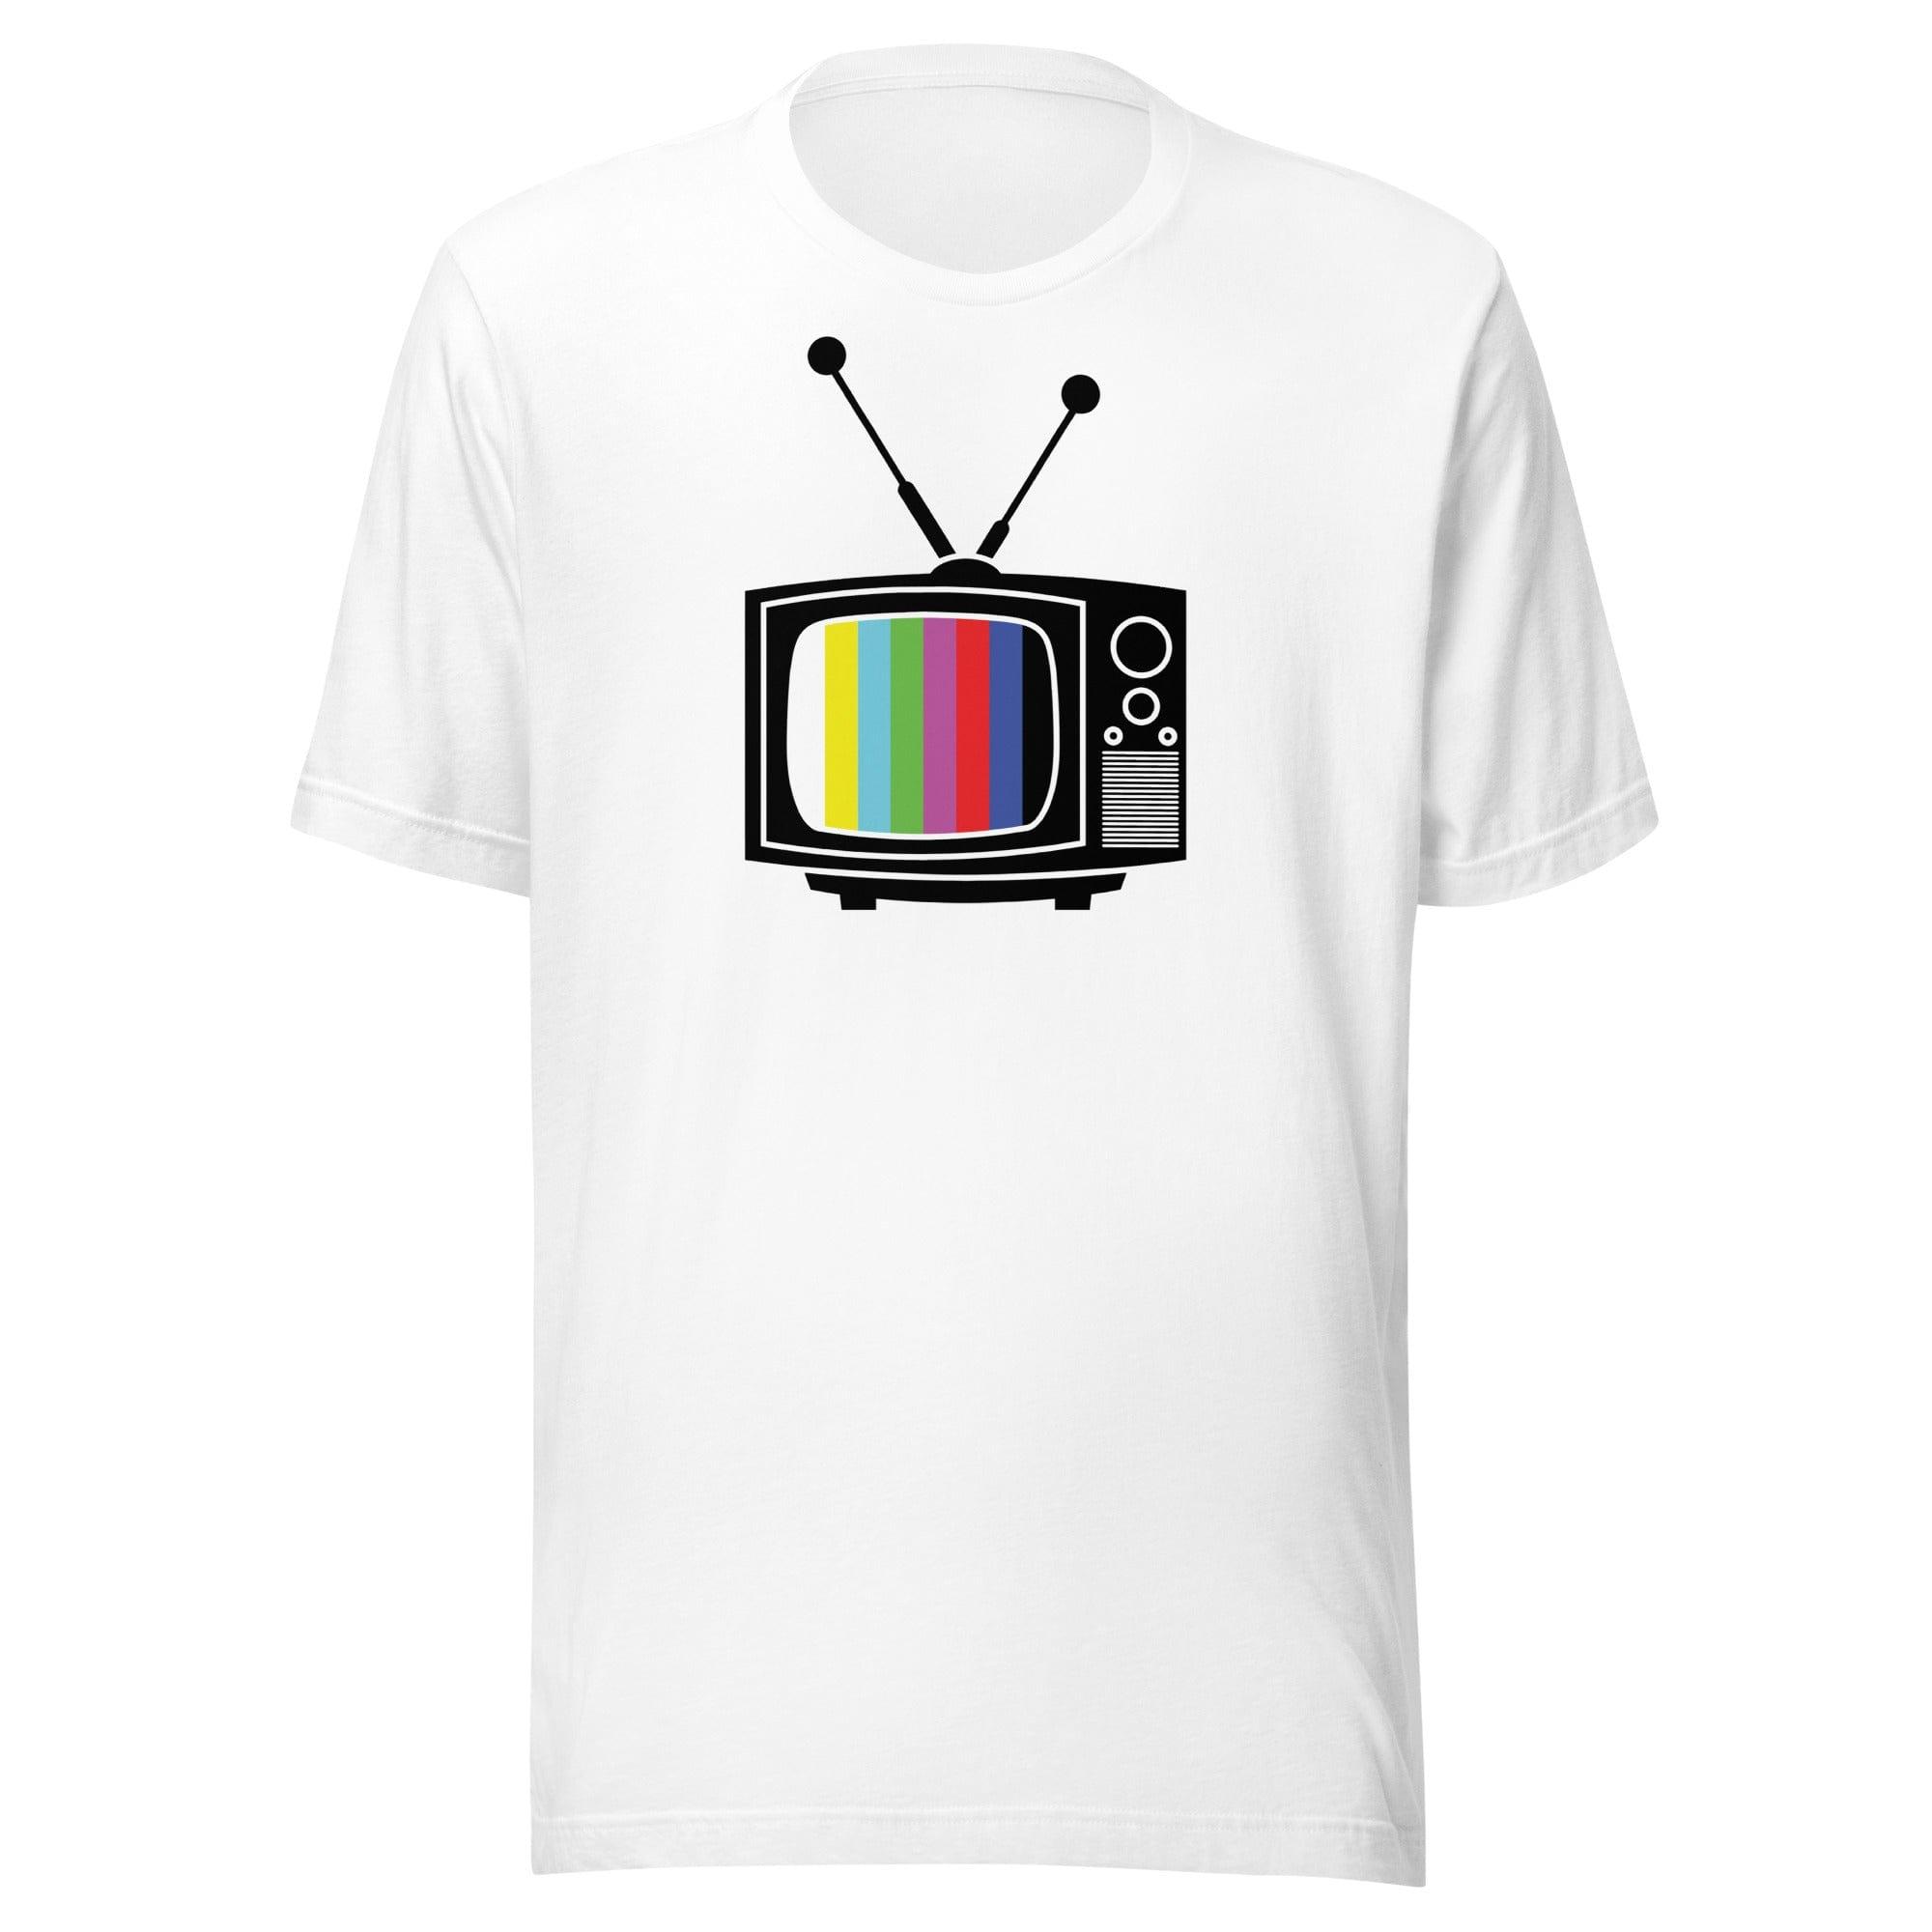 Tube TV With Rabbit Ears Antenna Unisex Short Sleeve t-shirt - TopKoalaTee